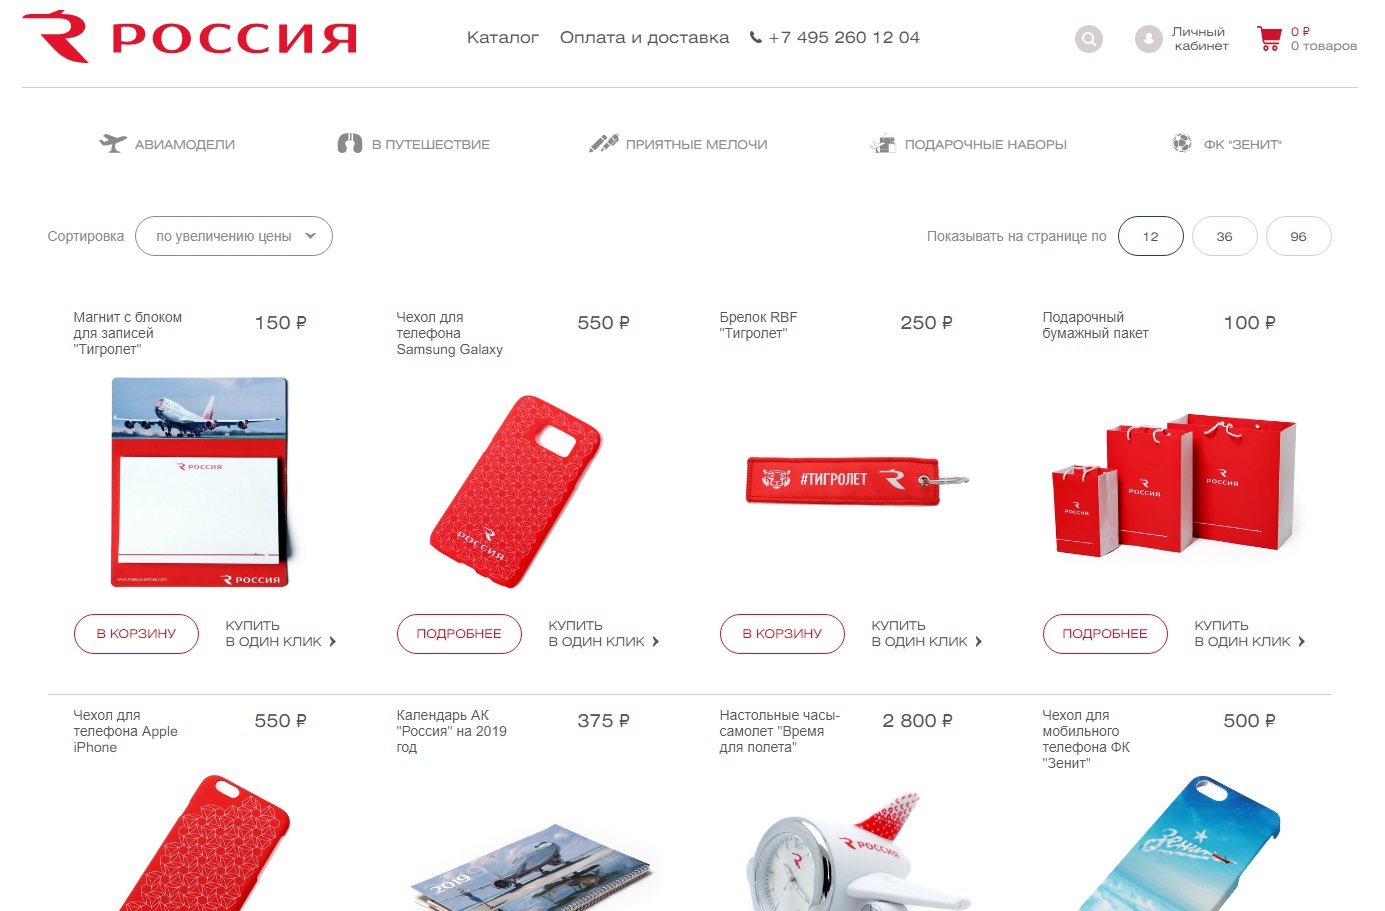 Авиакомпания Россия сувениры. Интернет магазины России.